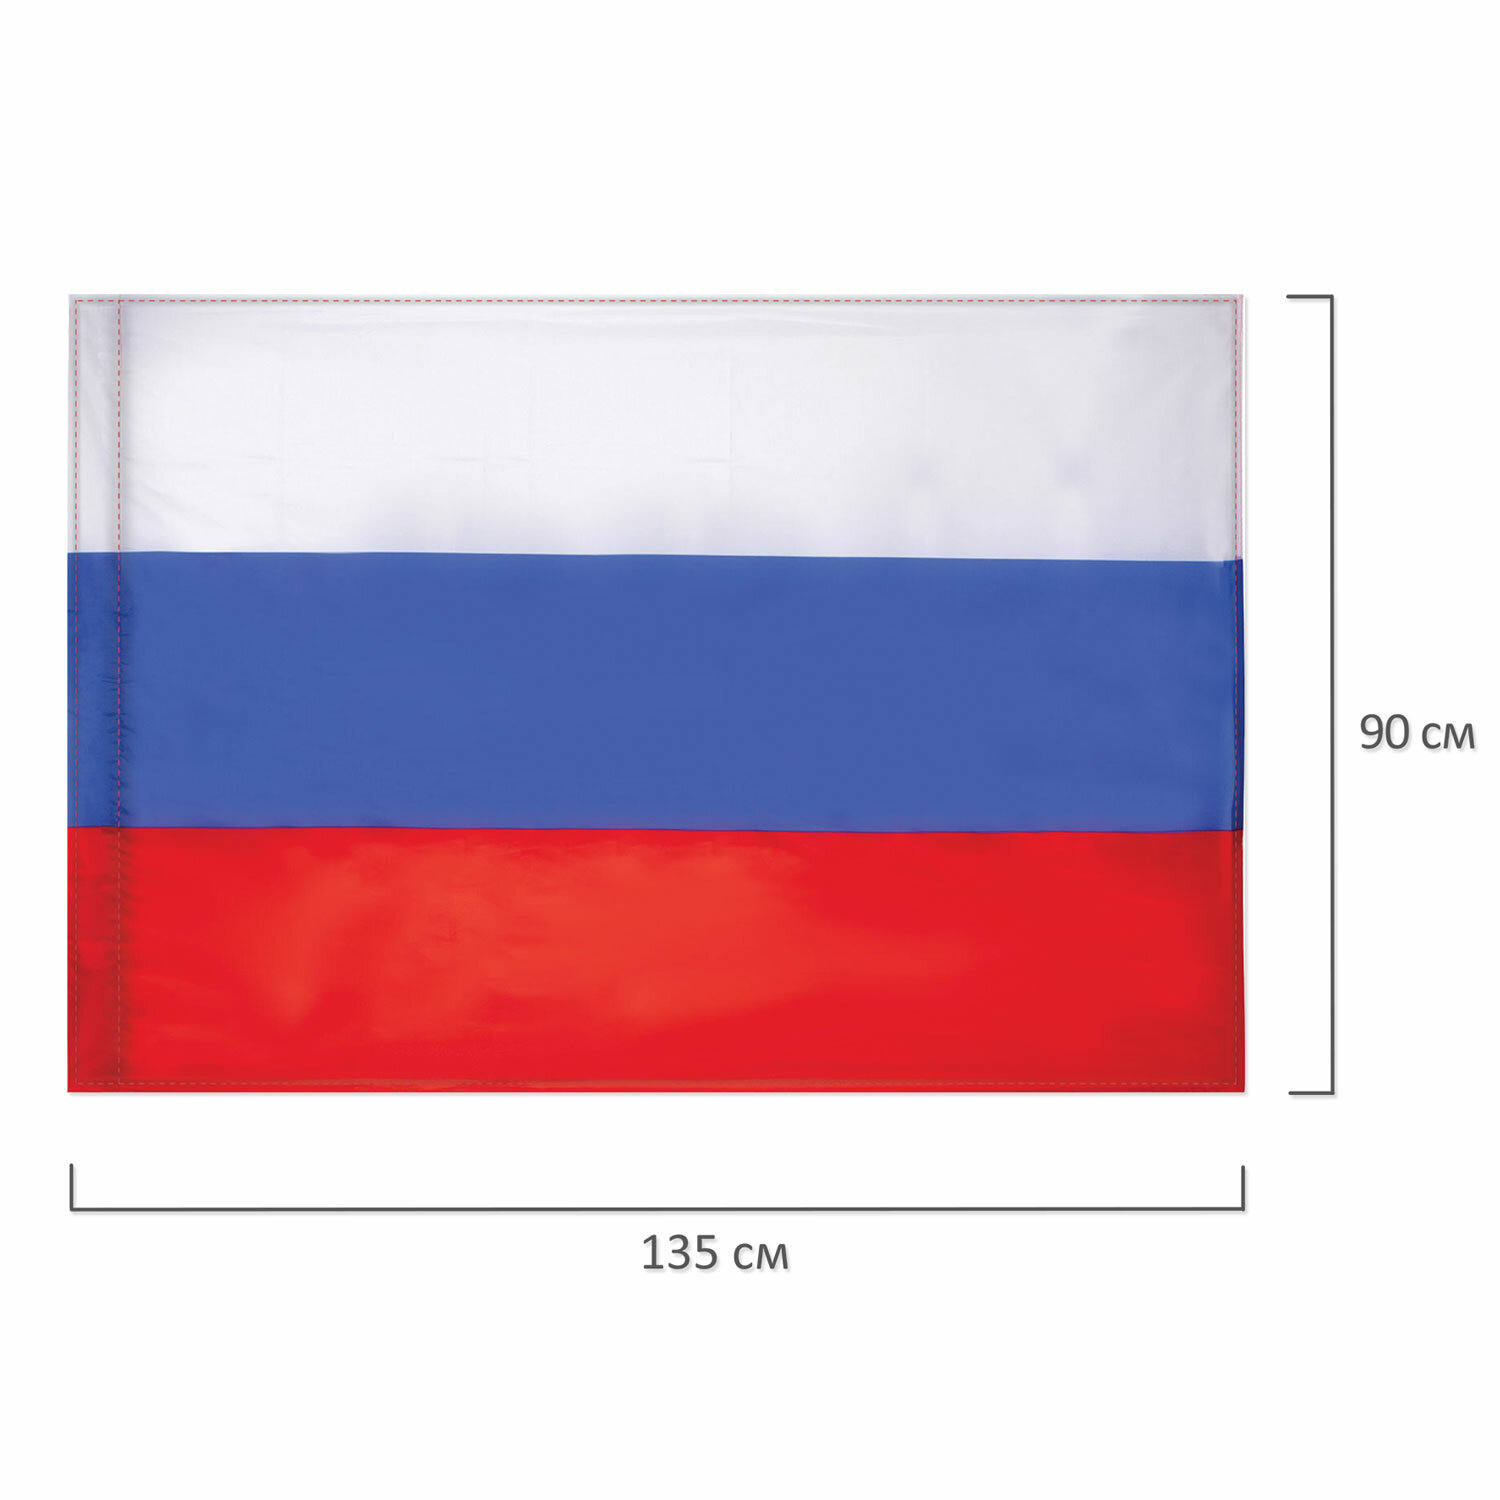 Флаг РОССИИ 90х135см с влагозащитной пропиткой, полиэфирный шелк, STAFF